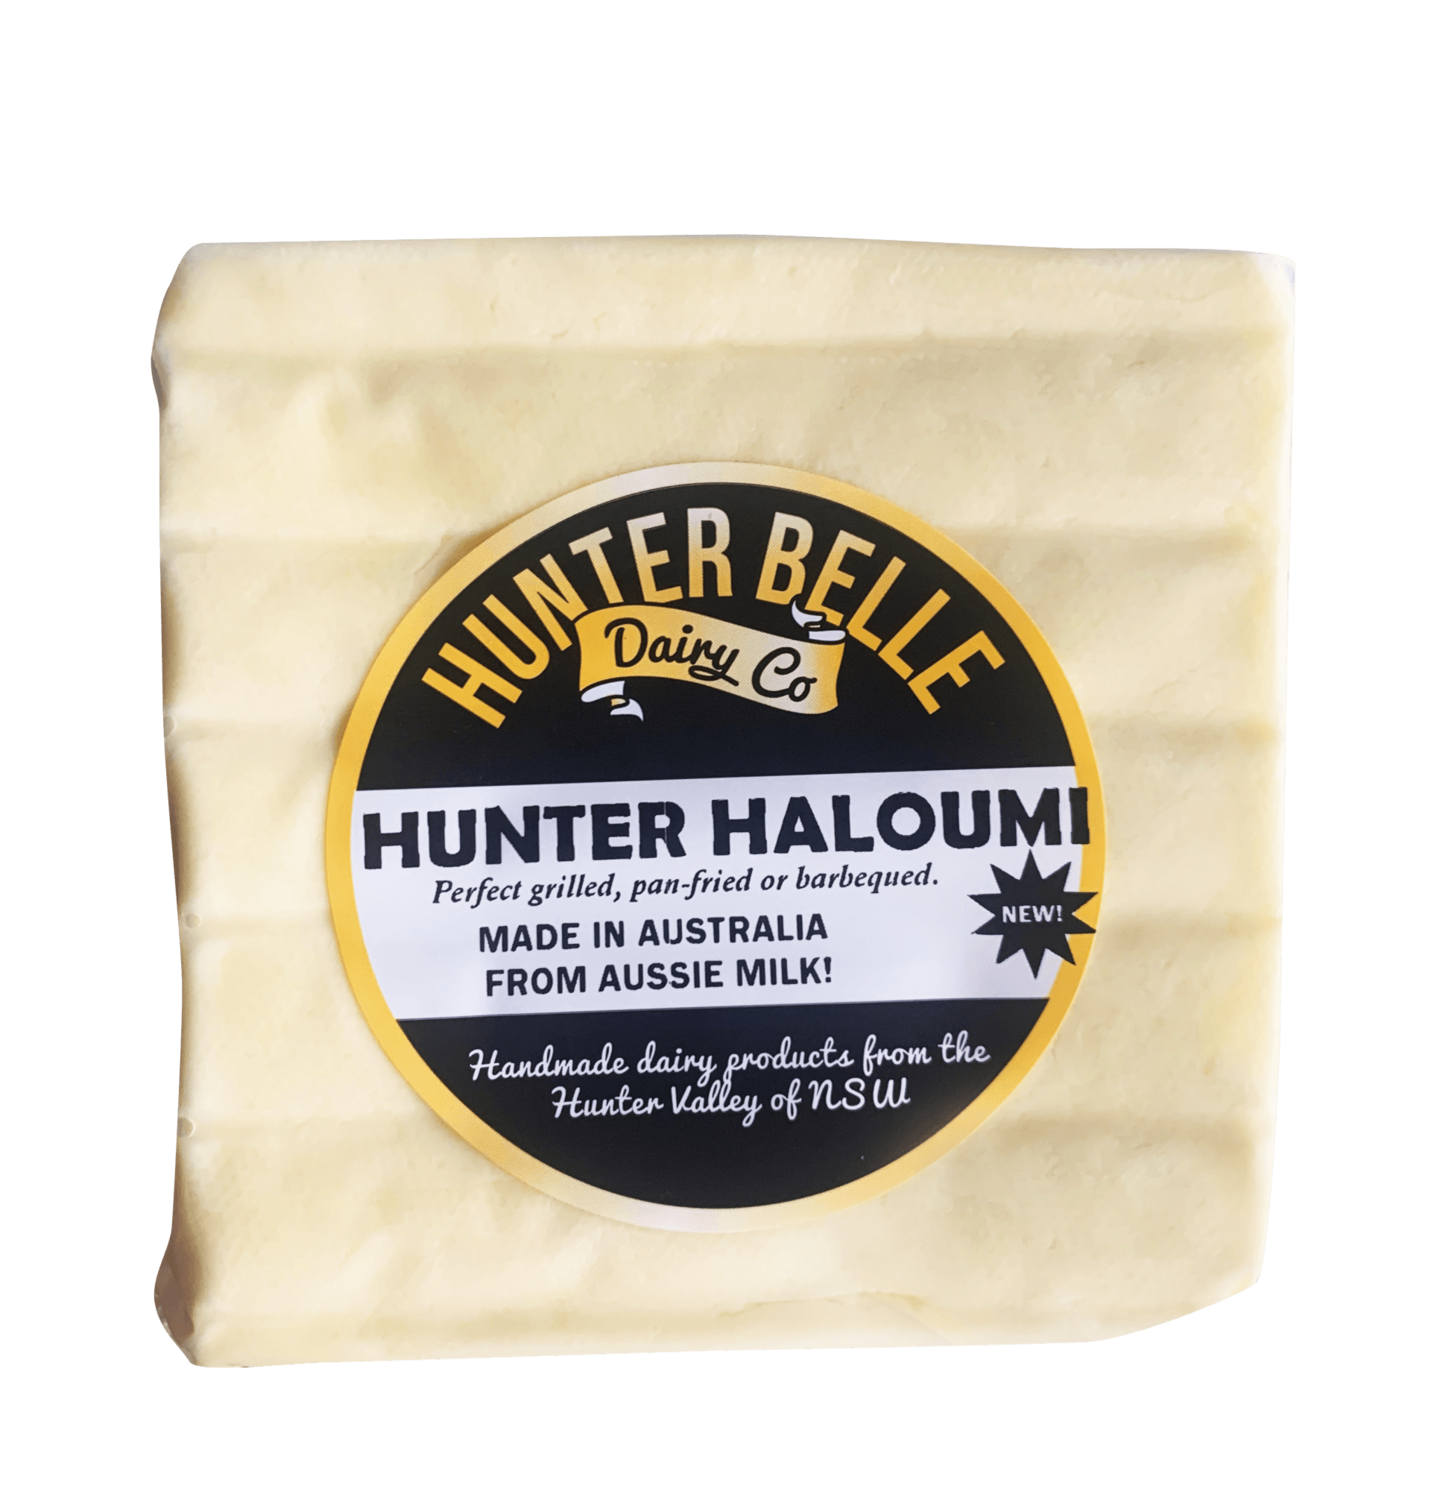 Hunterbelle Cheese 180g - Haloumi